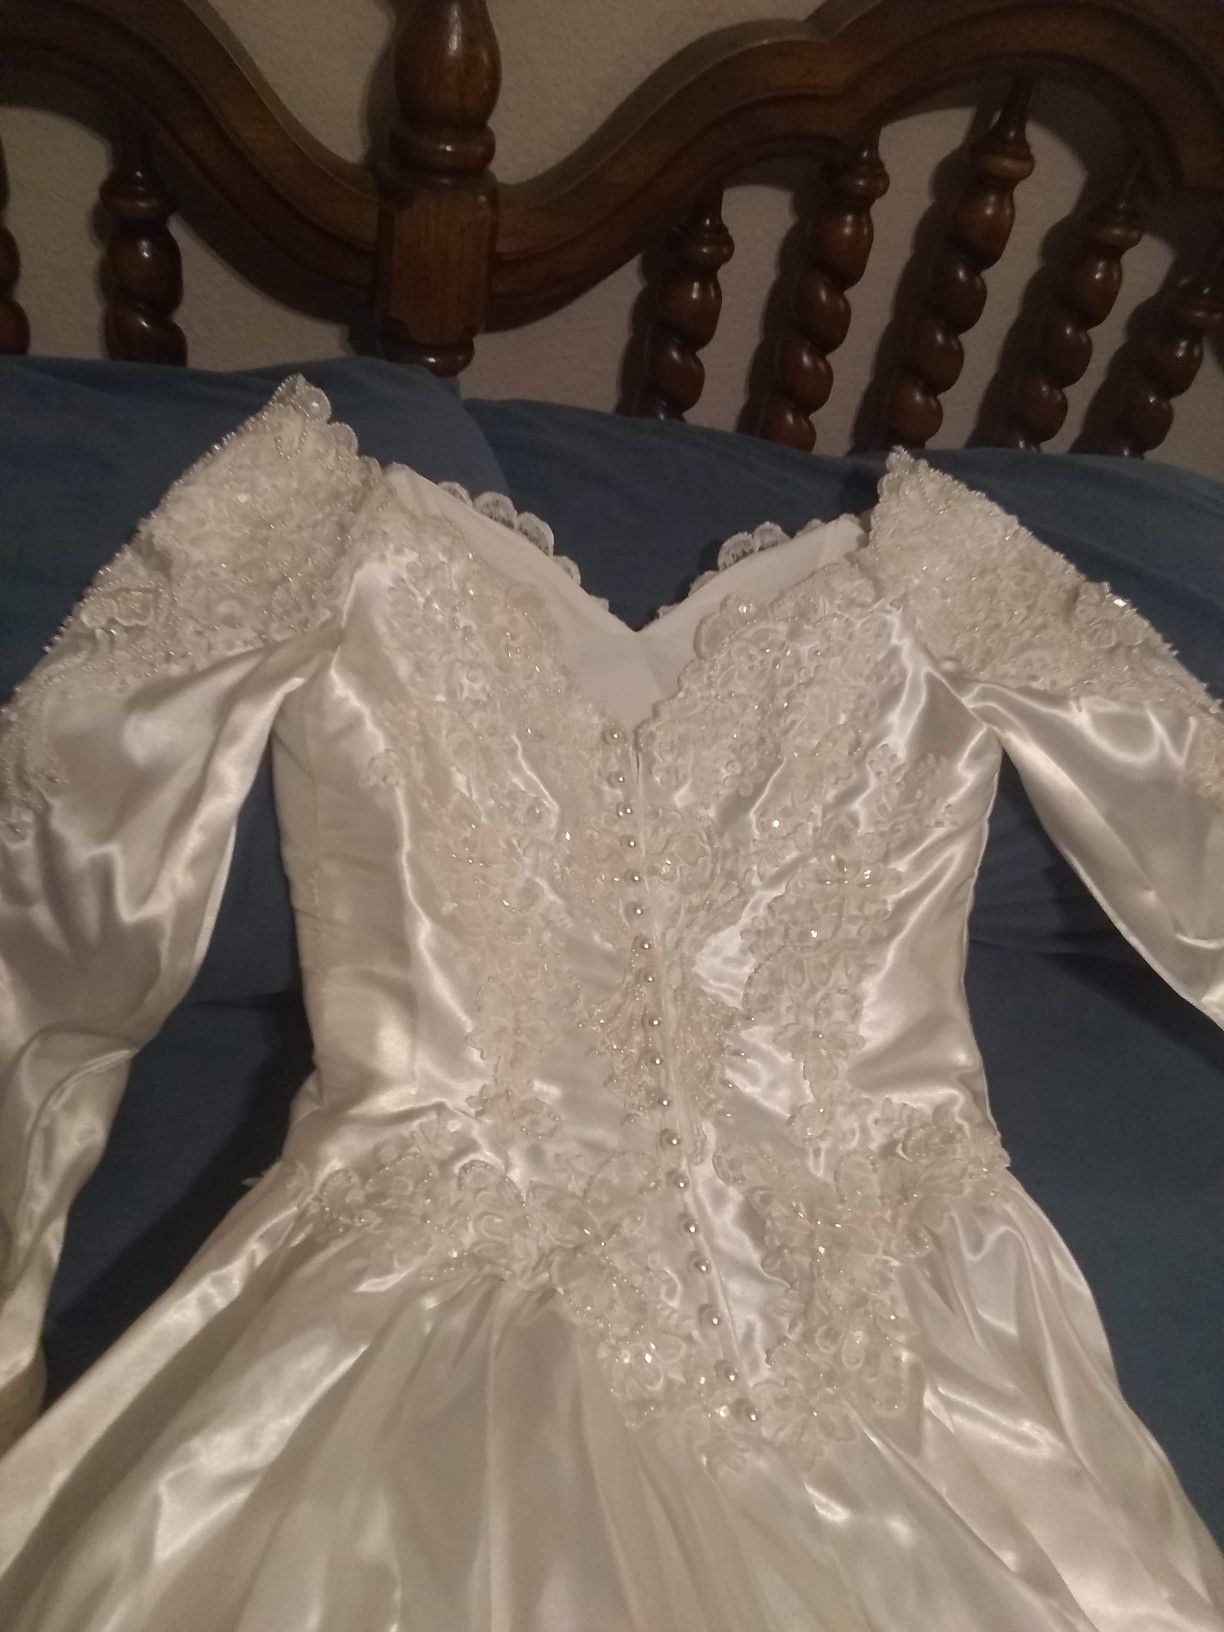 Size 12 Sweetheart wedding dress